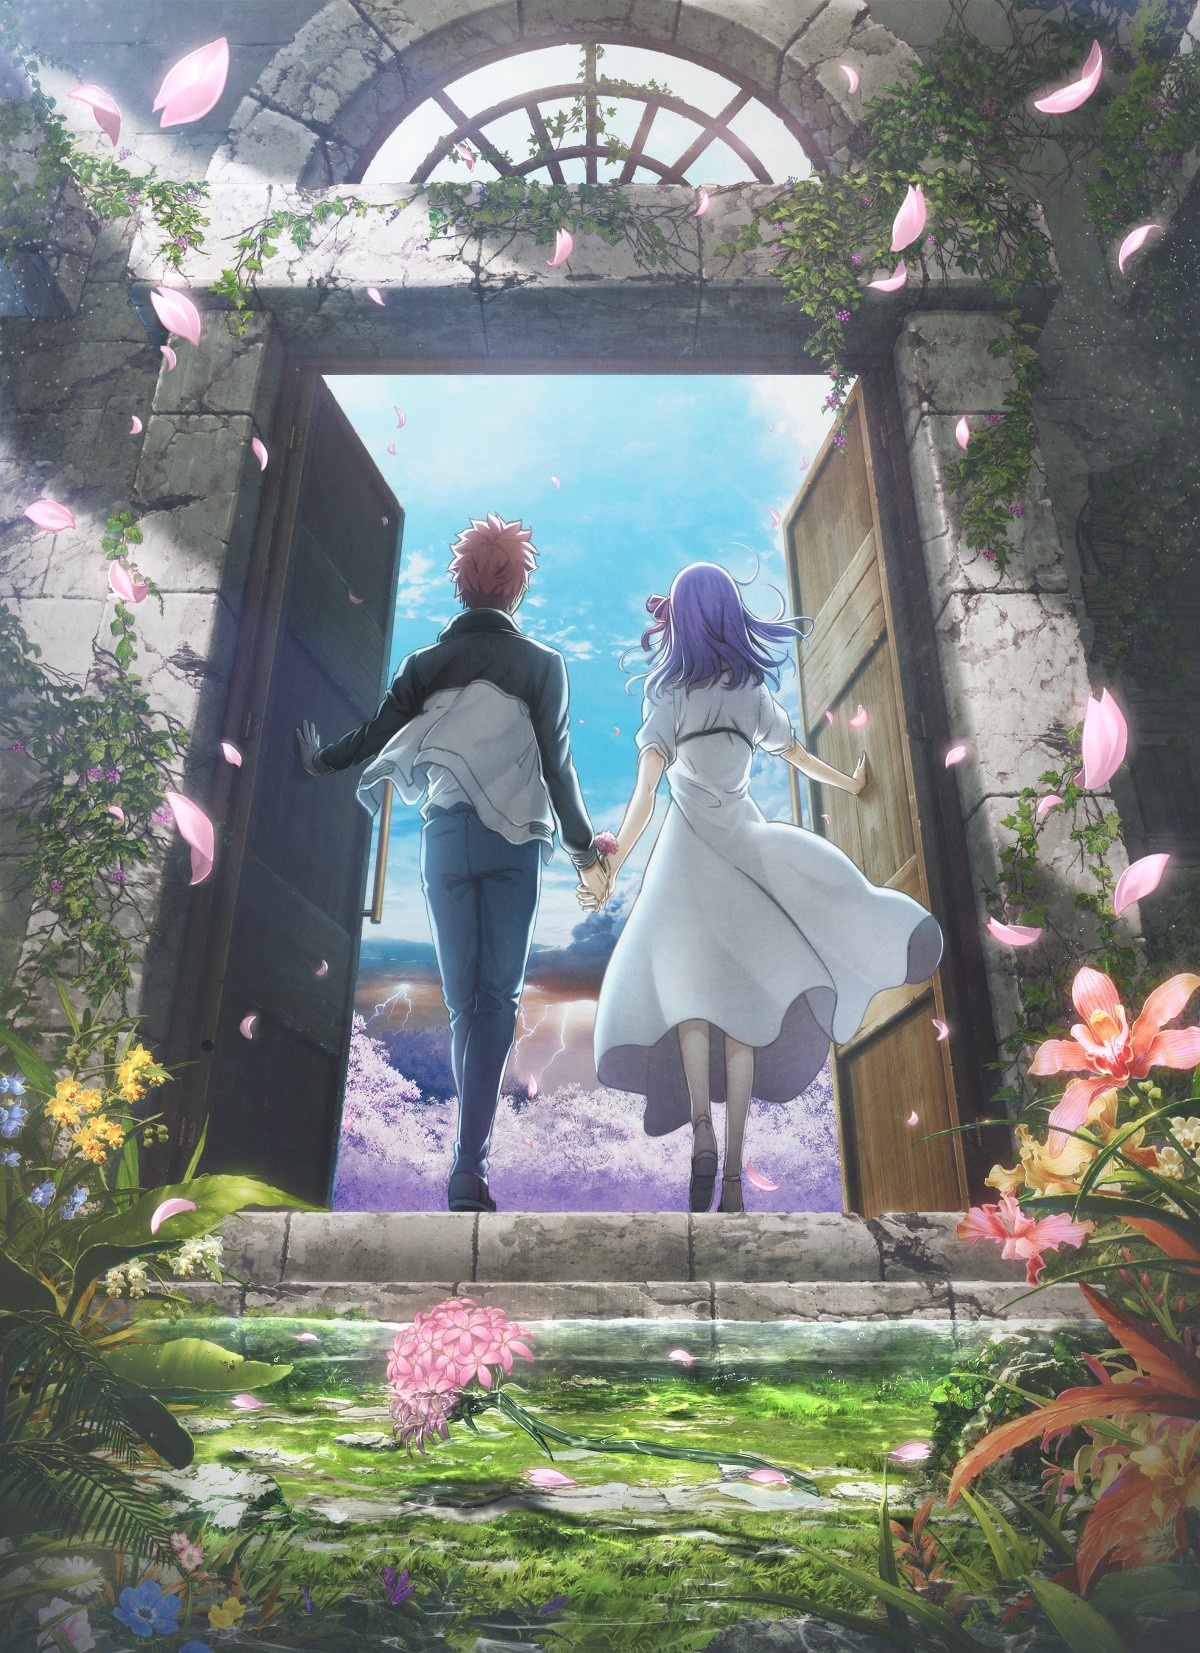 劇場版 Fate 最終章のキービジュアル 特報公開 士郎と桜の物語完結へ Oricon News